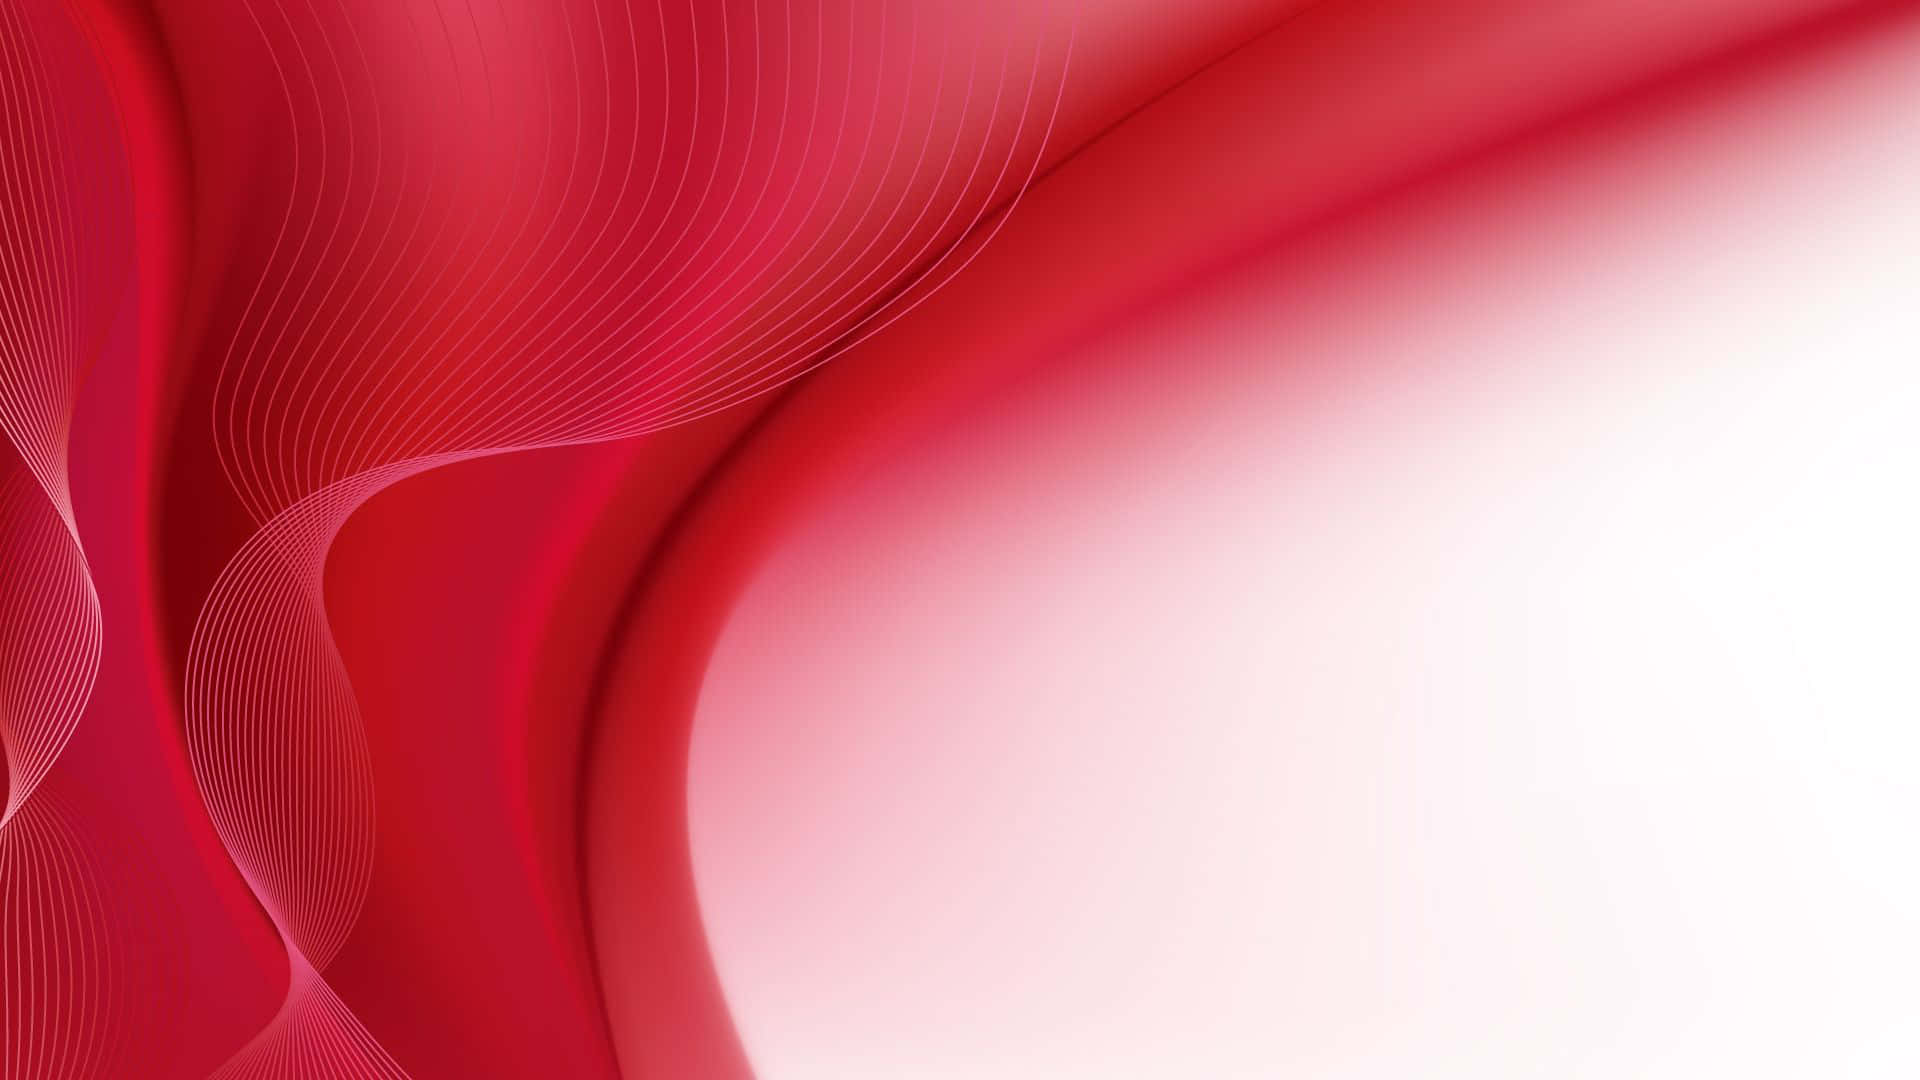 Bellezaestética En Rojo Y Blanco. Fondo de pantalla